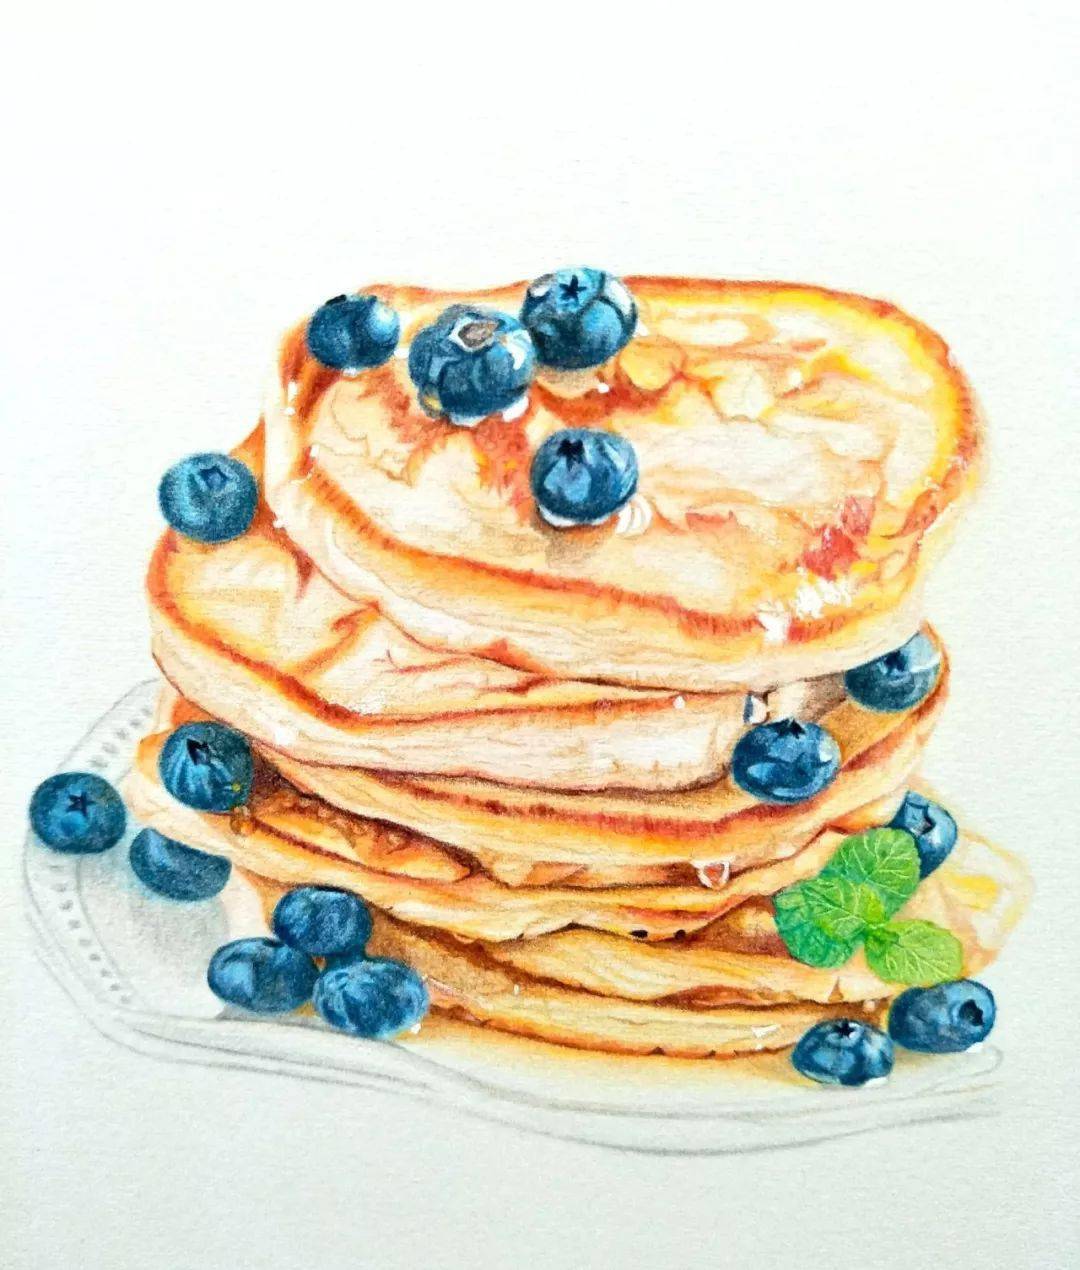 【彩铅教程】蓝莓黄油松饼的画法步骤图